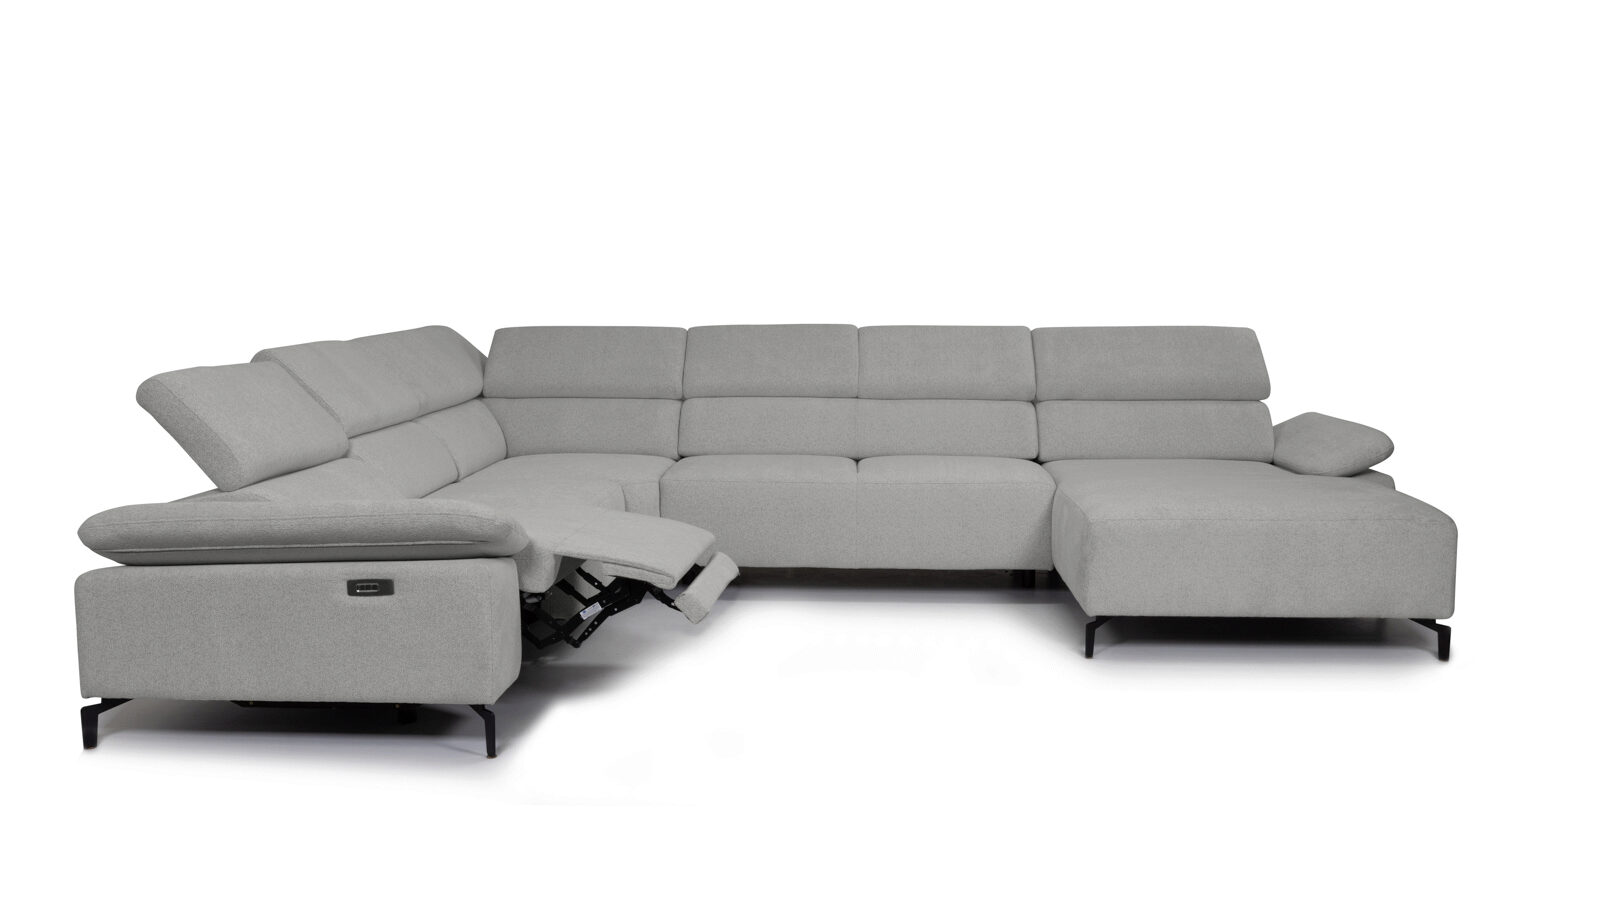 П-образный диван Square new с реклайнером слева прямой диван с реклайнером справа square new